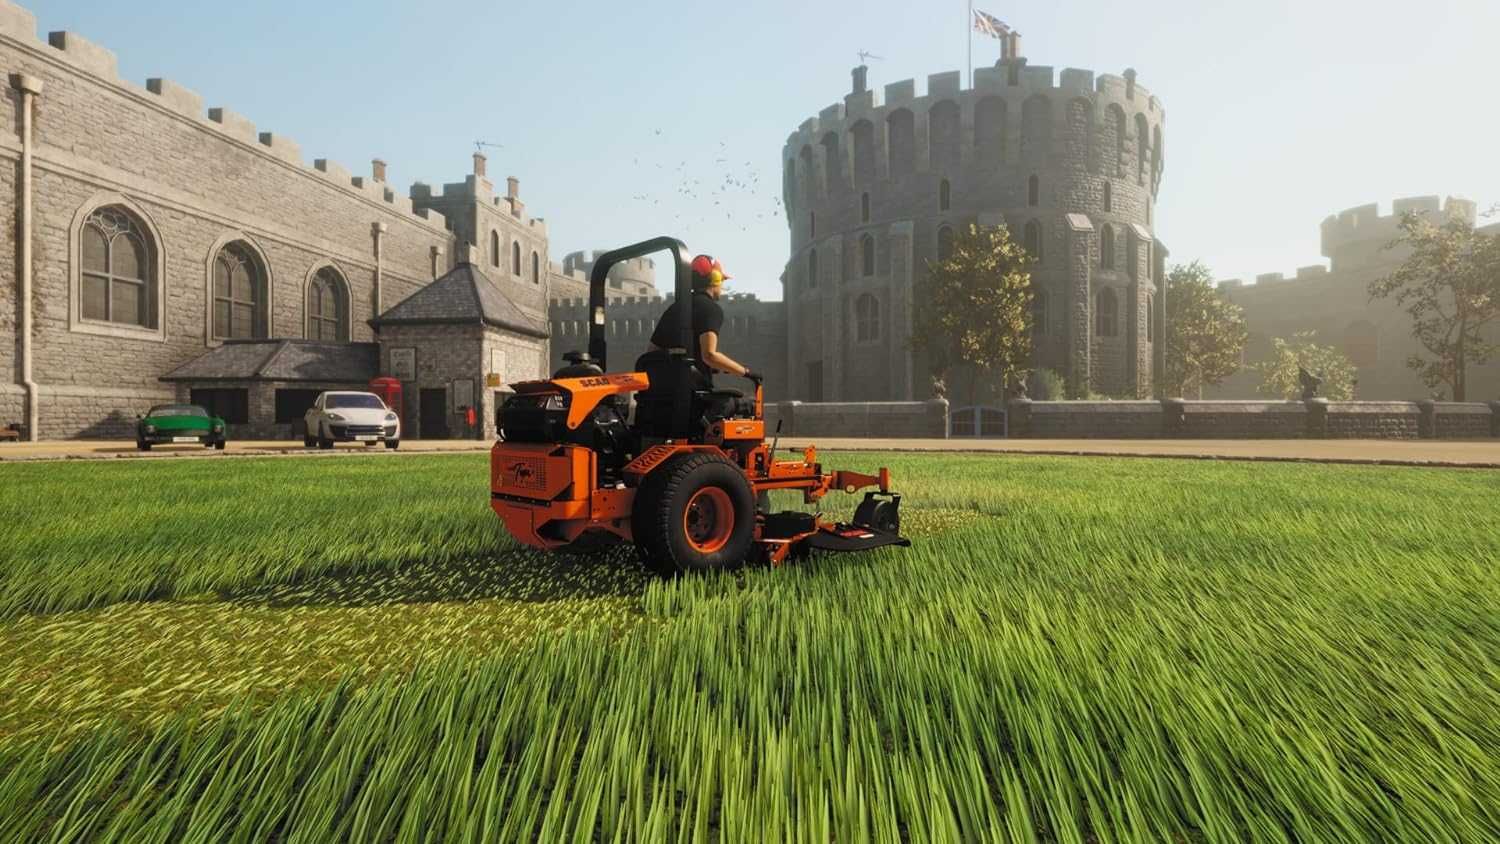 Lawn Mowing Simulator Landmark Edition PS5 - symulator koszenia trawy